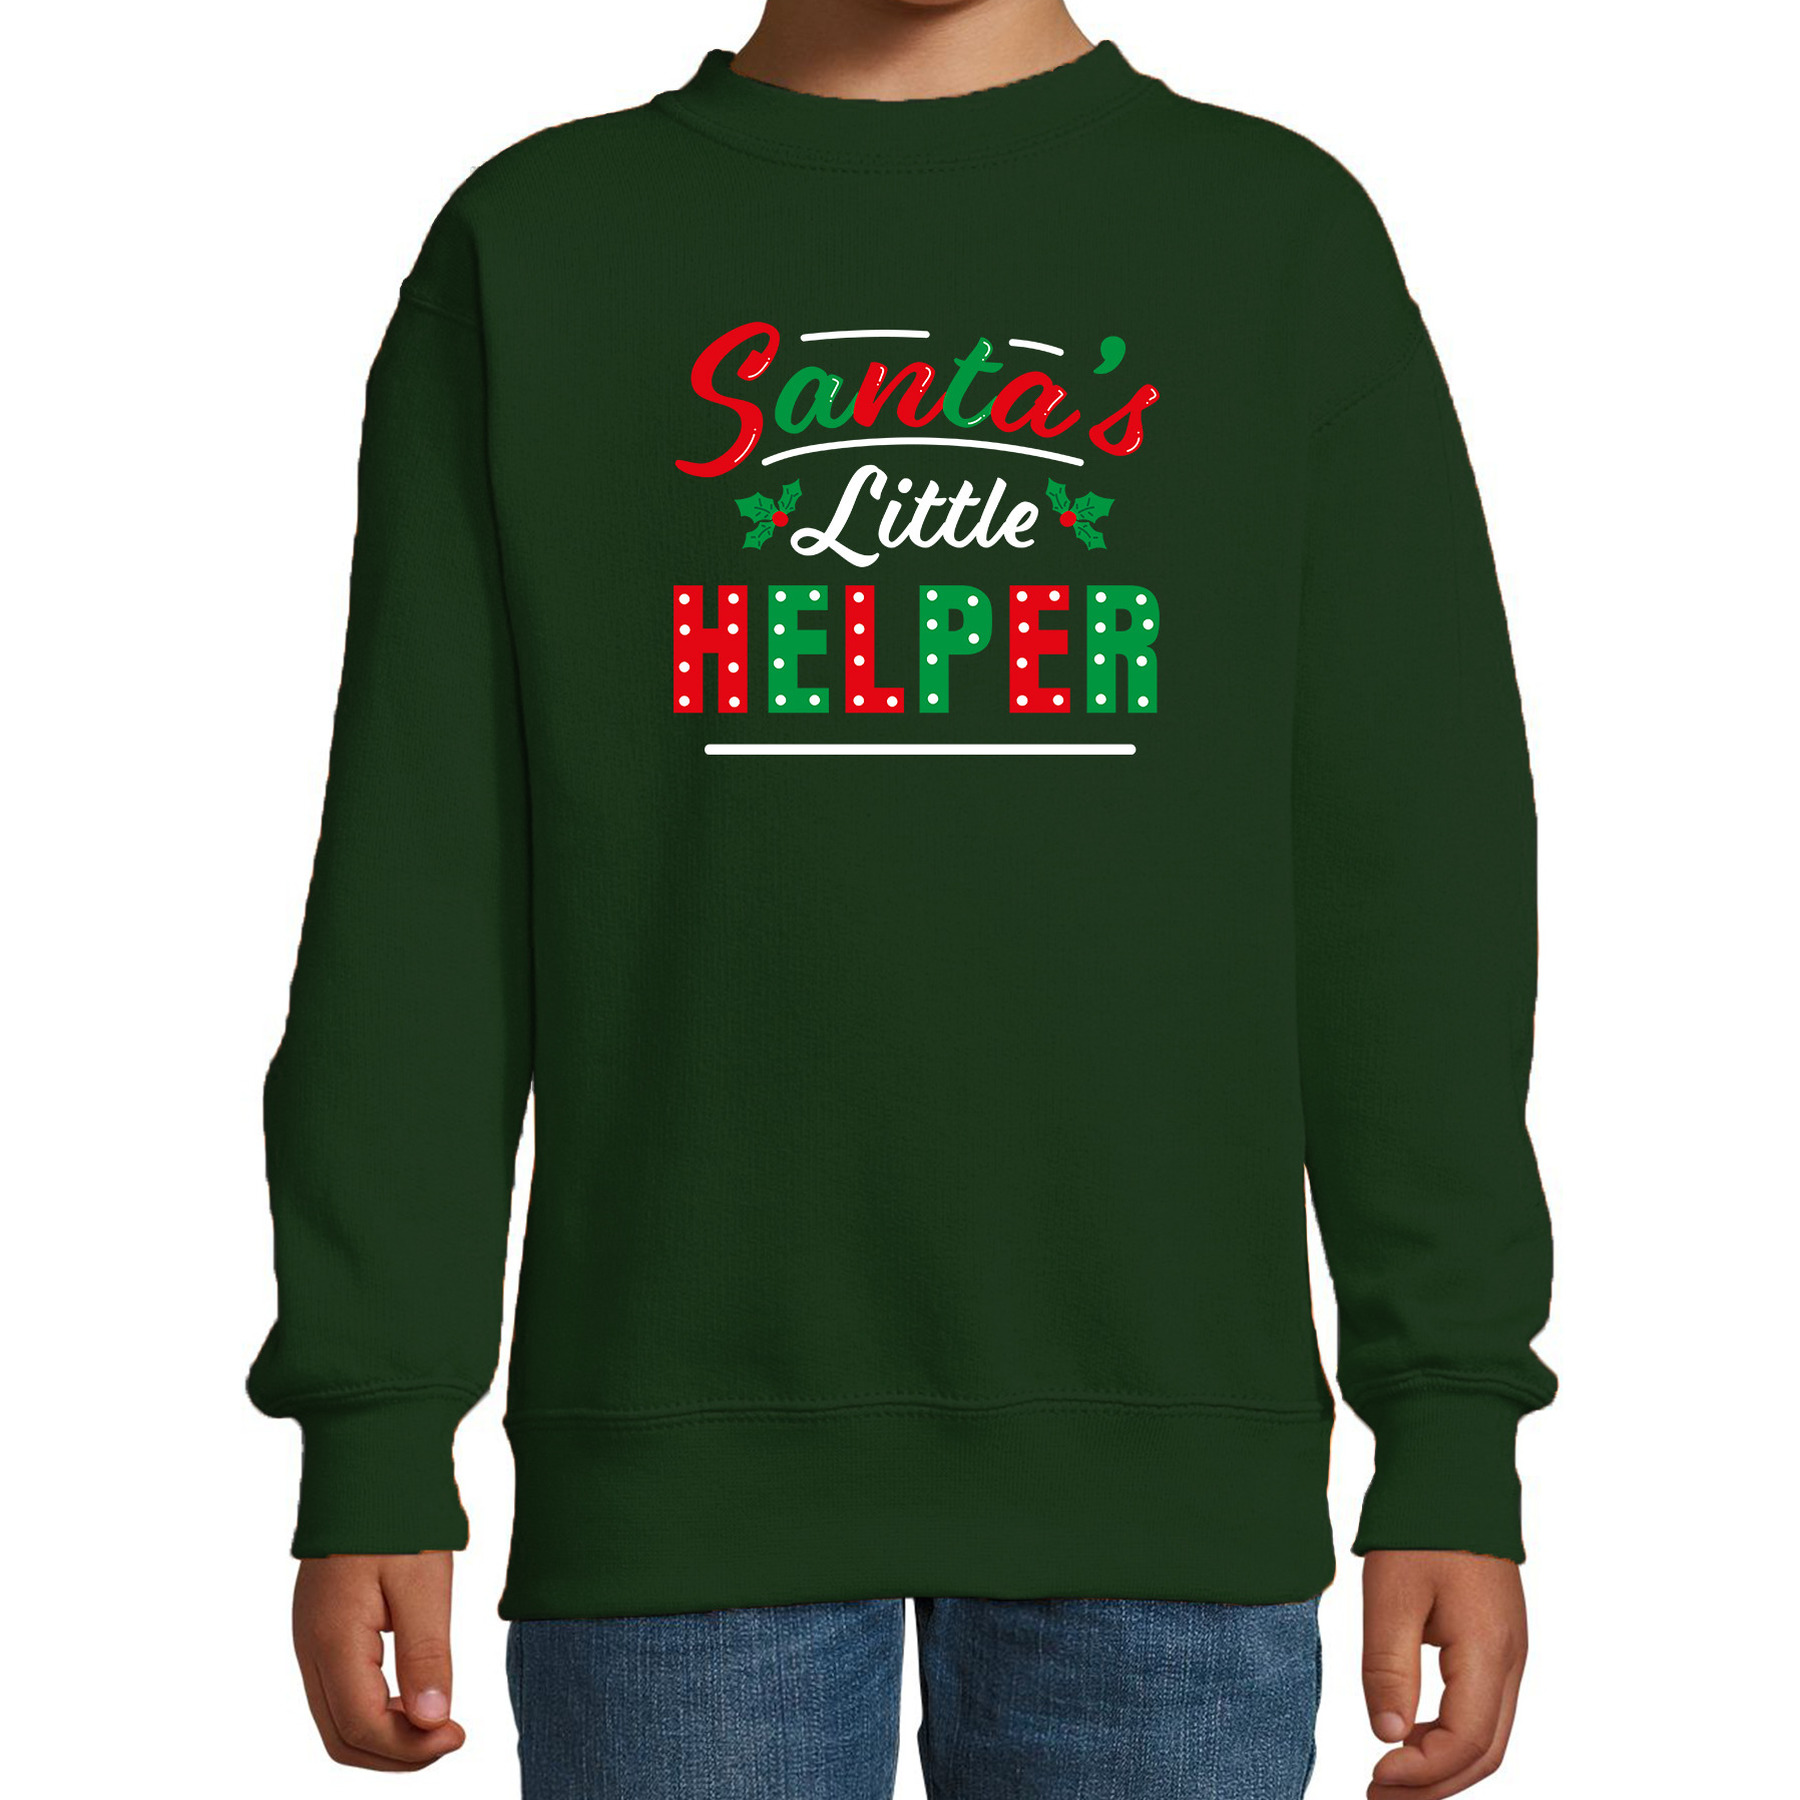 Santas little helper-Het hulpje van de Kerstman Kerstsweater-Kersttrui groen voor kinderen